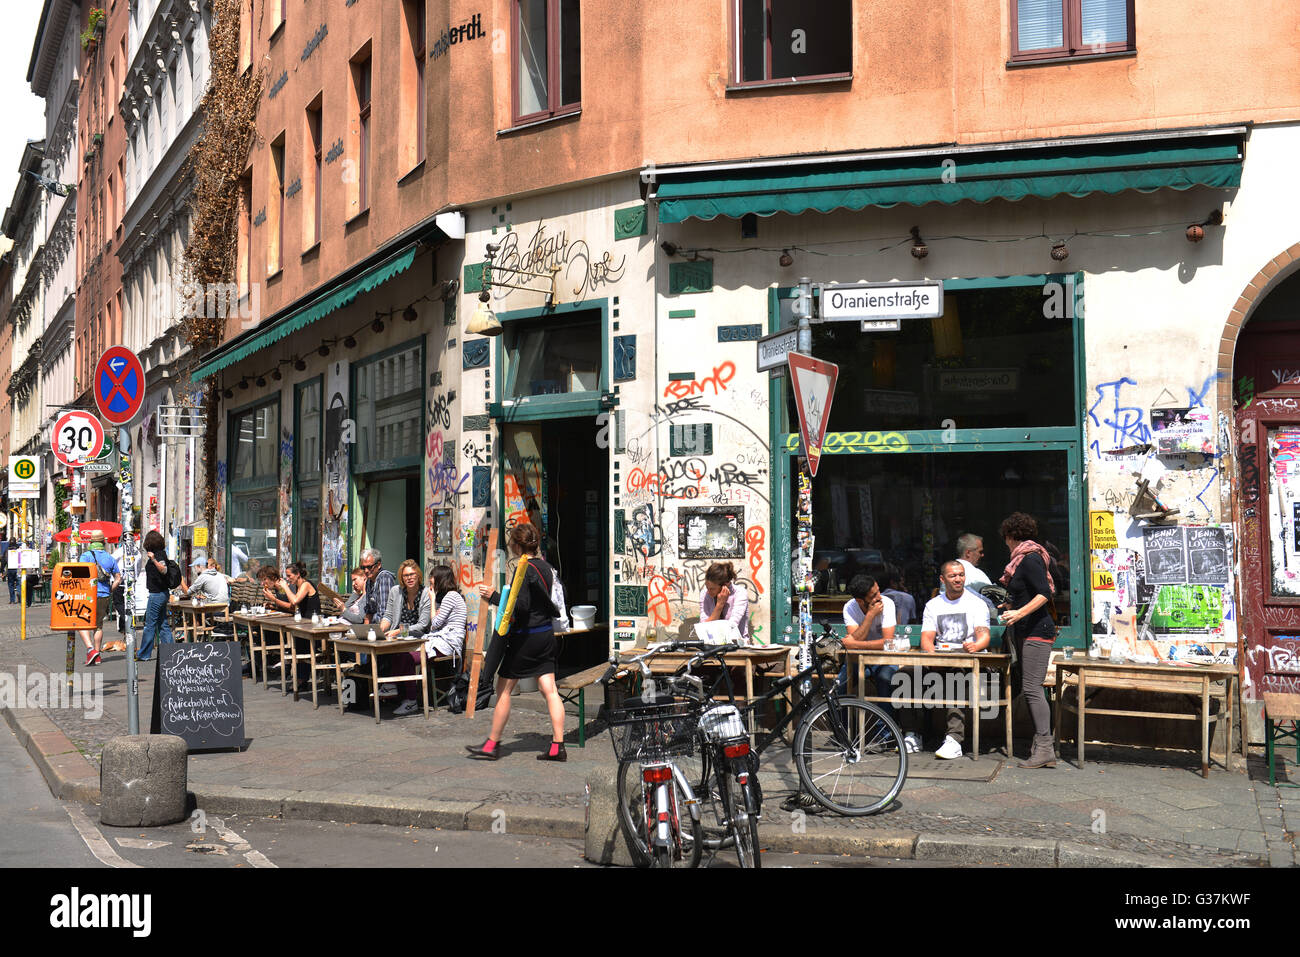 Strassencafe, Bateau Ivre, Oranienstrasse, Kreuzberg, Berlin, Deutschland Stock Photo